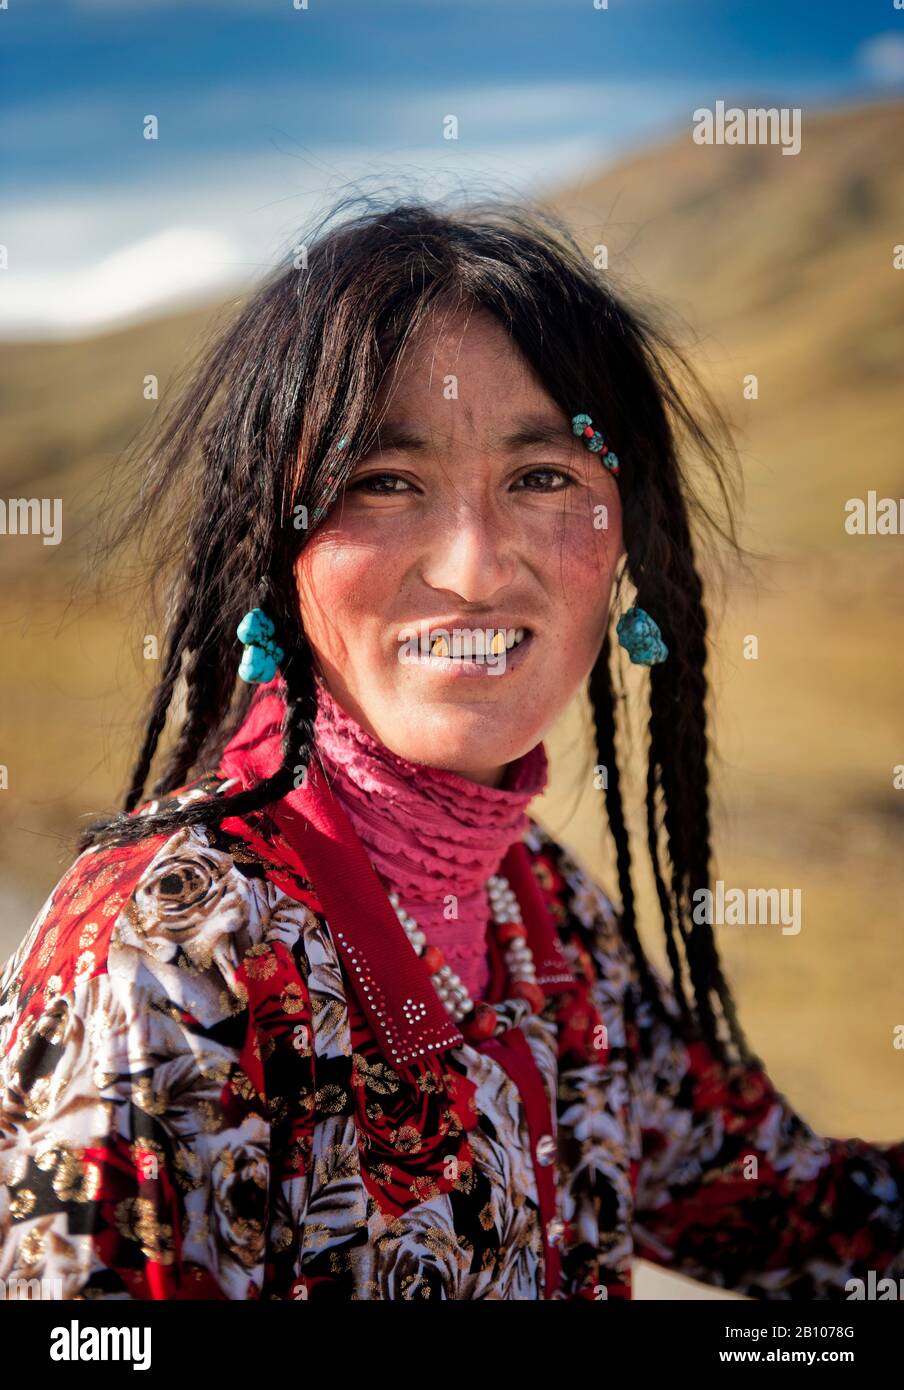 Eine junge Tibeterin trägt traditionellen Schmuck, der für ihre ethnische Gruppe typisch ist, sowie goldbedeckte Kaninchen, tibetisches Plateau Stockfoto